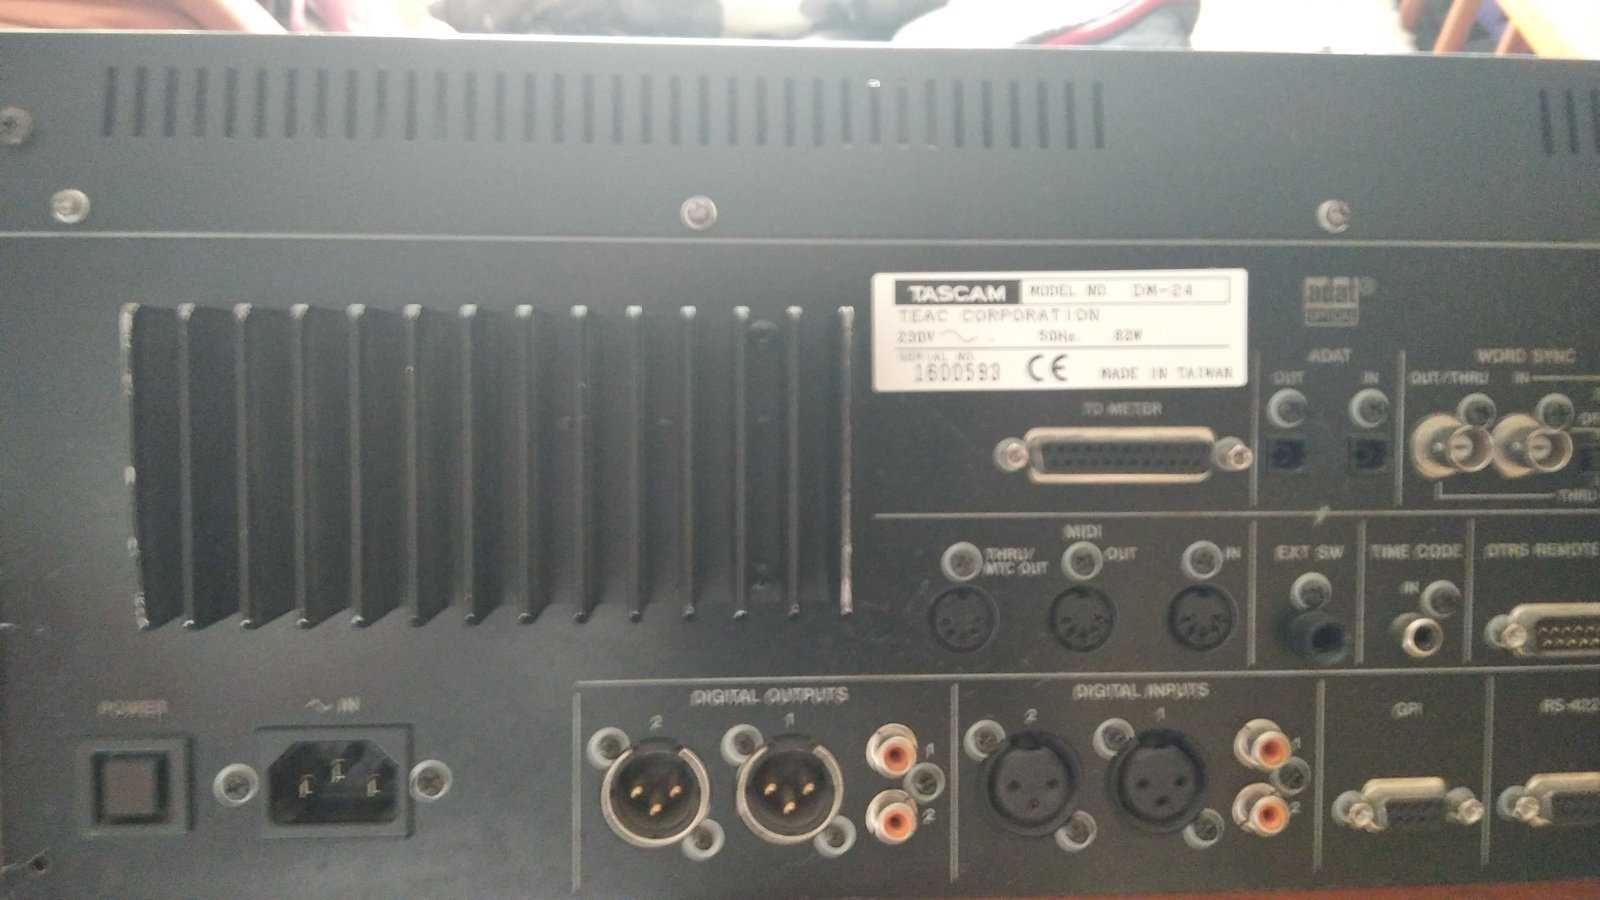 Tascam DM-24 цифровий мікшерний пульт